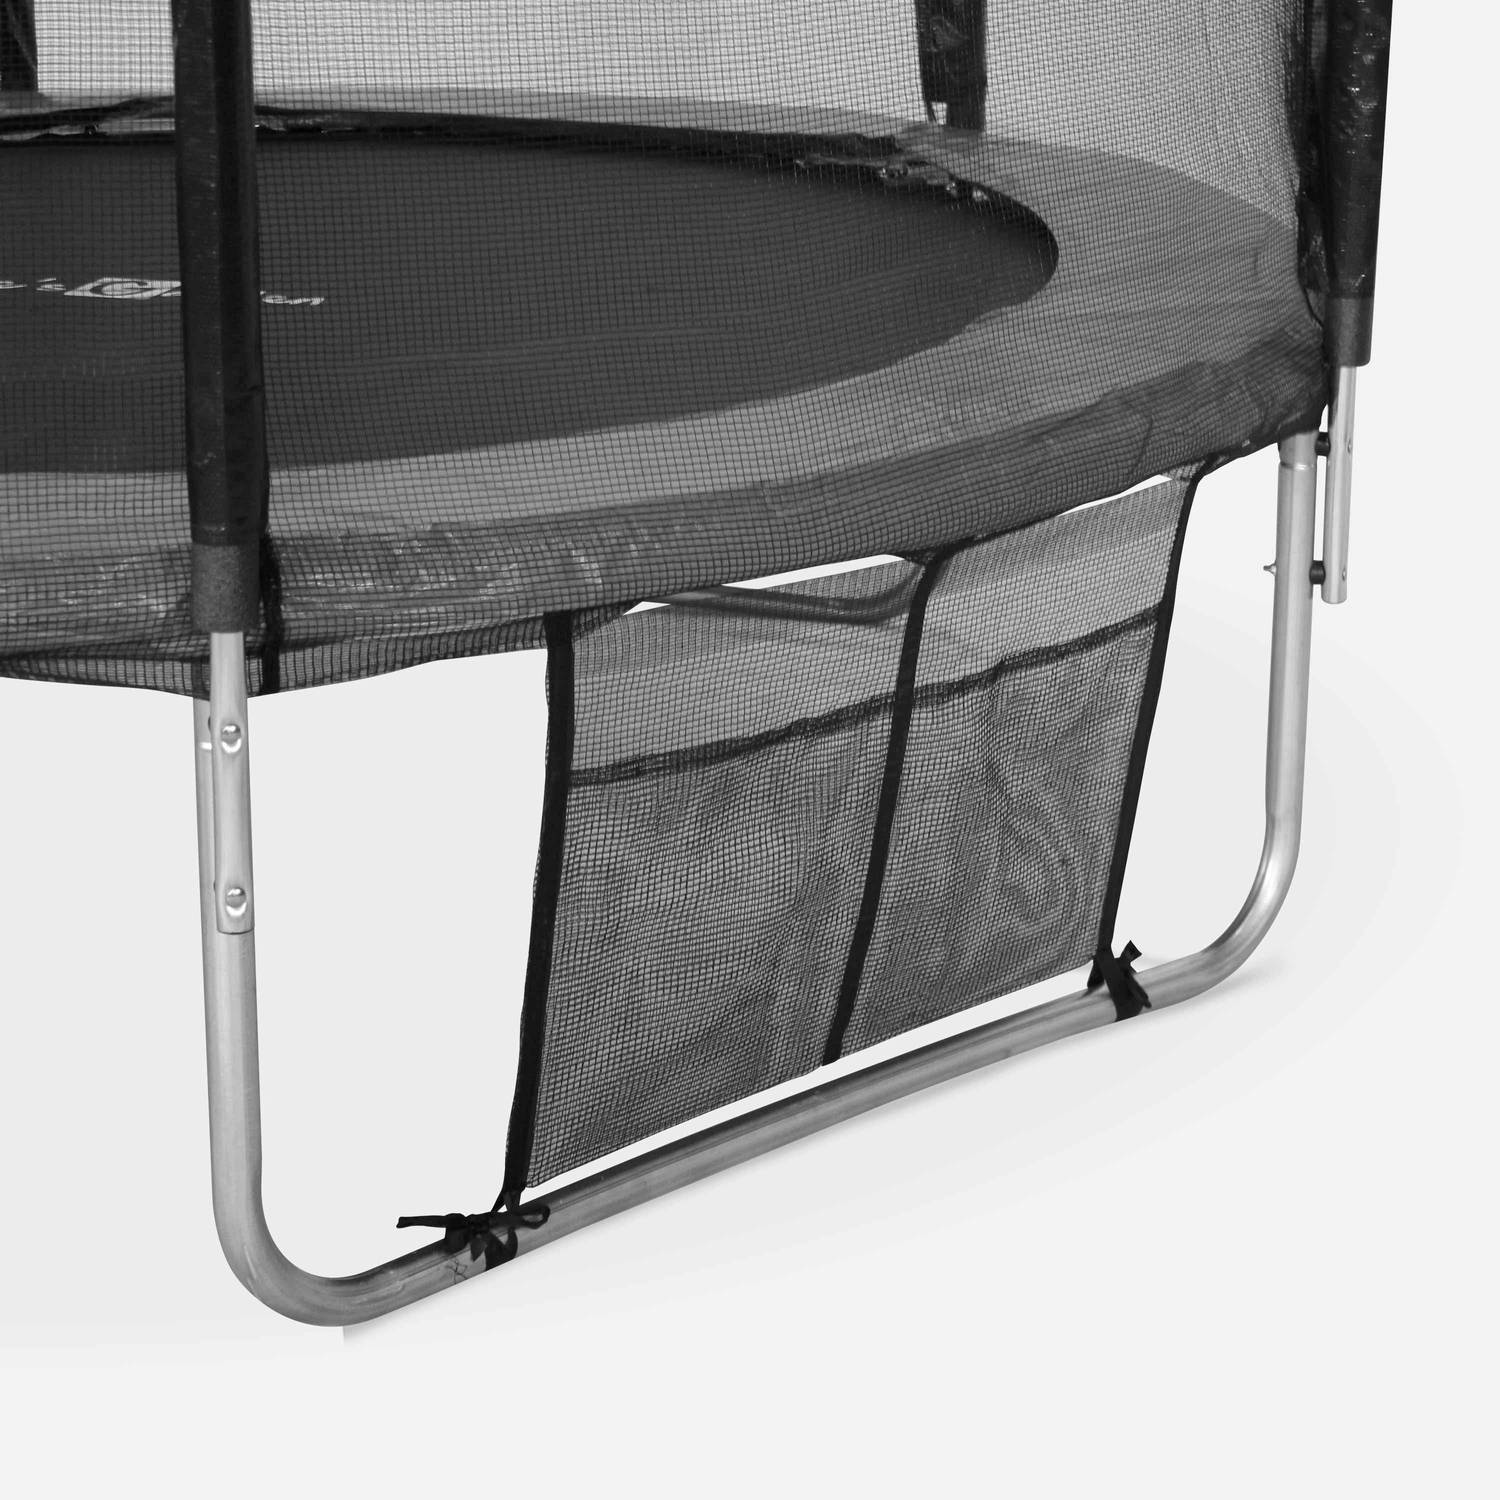 Trampoline 250cm - Pluton XXL Gris - avec filet de protection, échelle, bâche, filet pour chaussures, kit d'ancrage, trampoline de jardin 250 cm |Qualité PRO |Normes EU Photo4